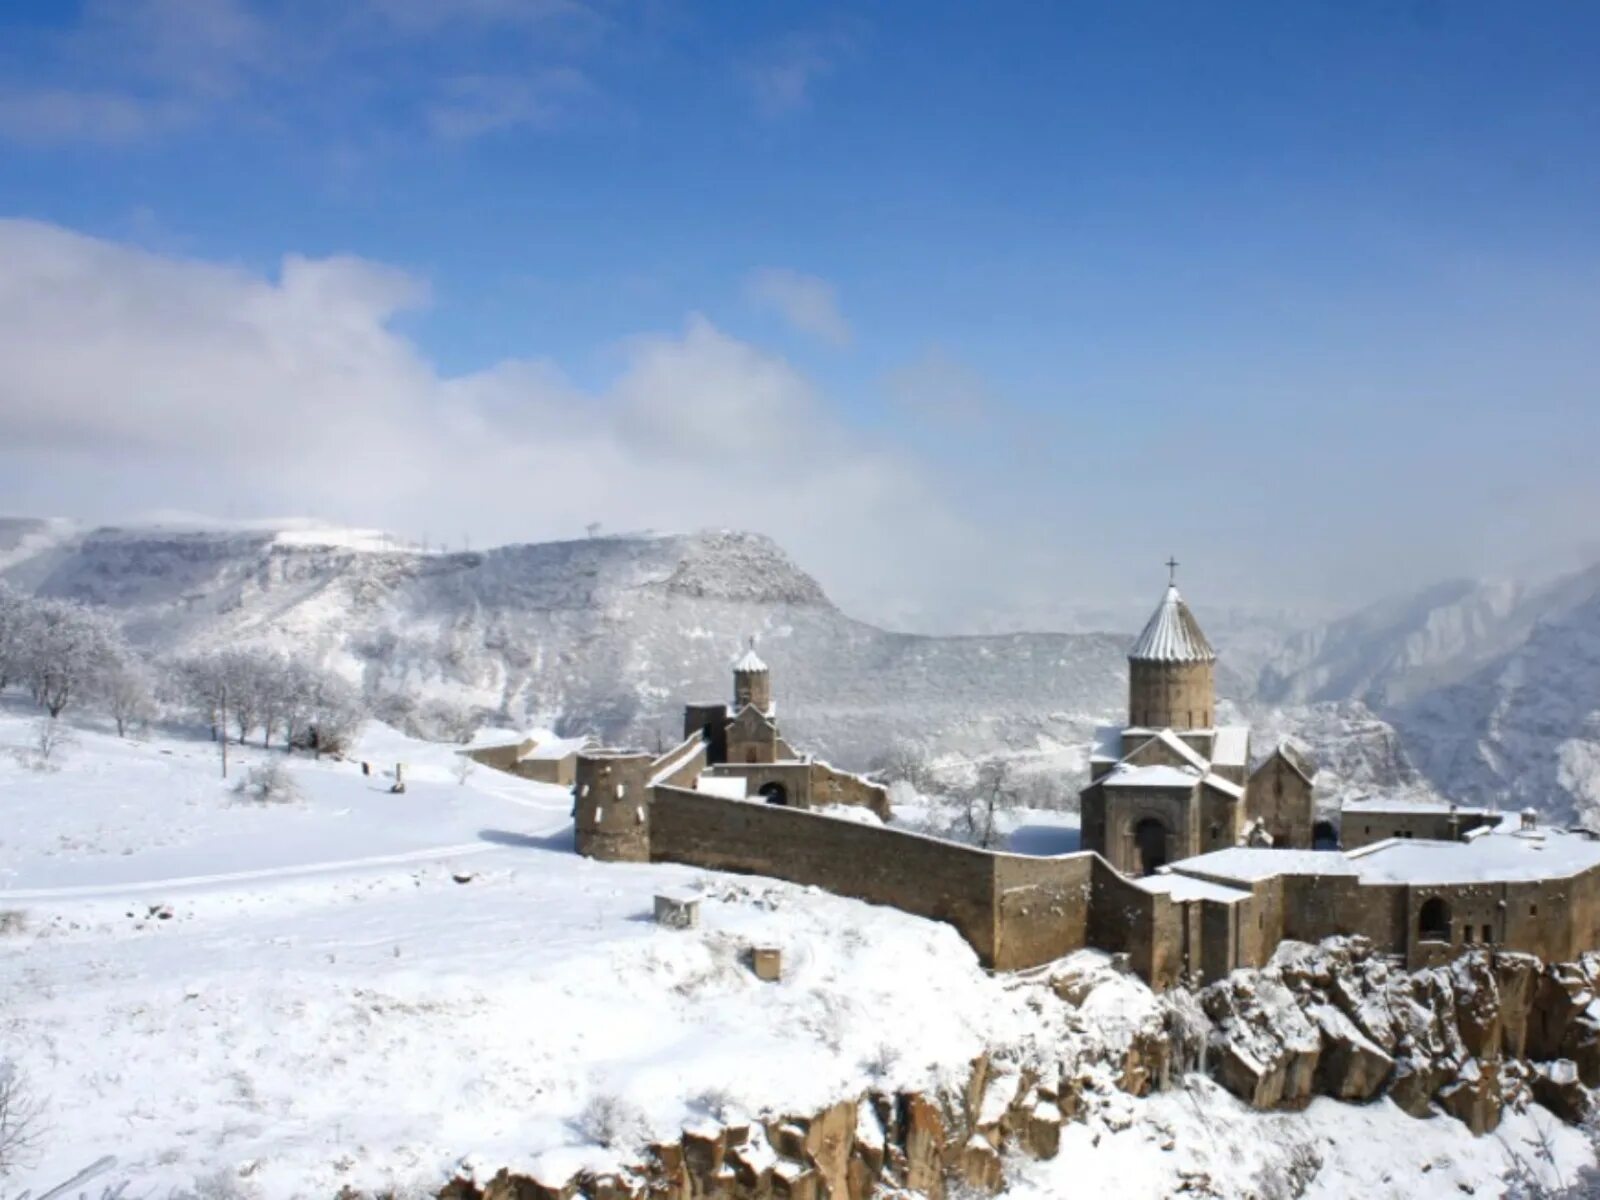 Гюмри тбилиси. Татев монастырь в Армении зимой. Гехард монастырь Армения зимой. Монастырь Нораванк - Ереван зима. Монастырь Гегард Армения зимой.